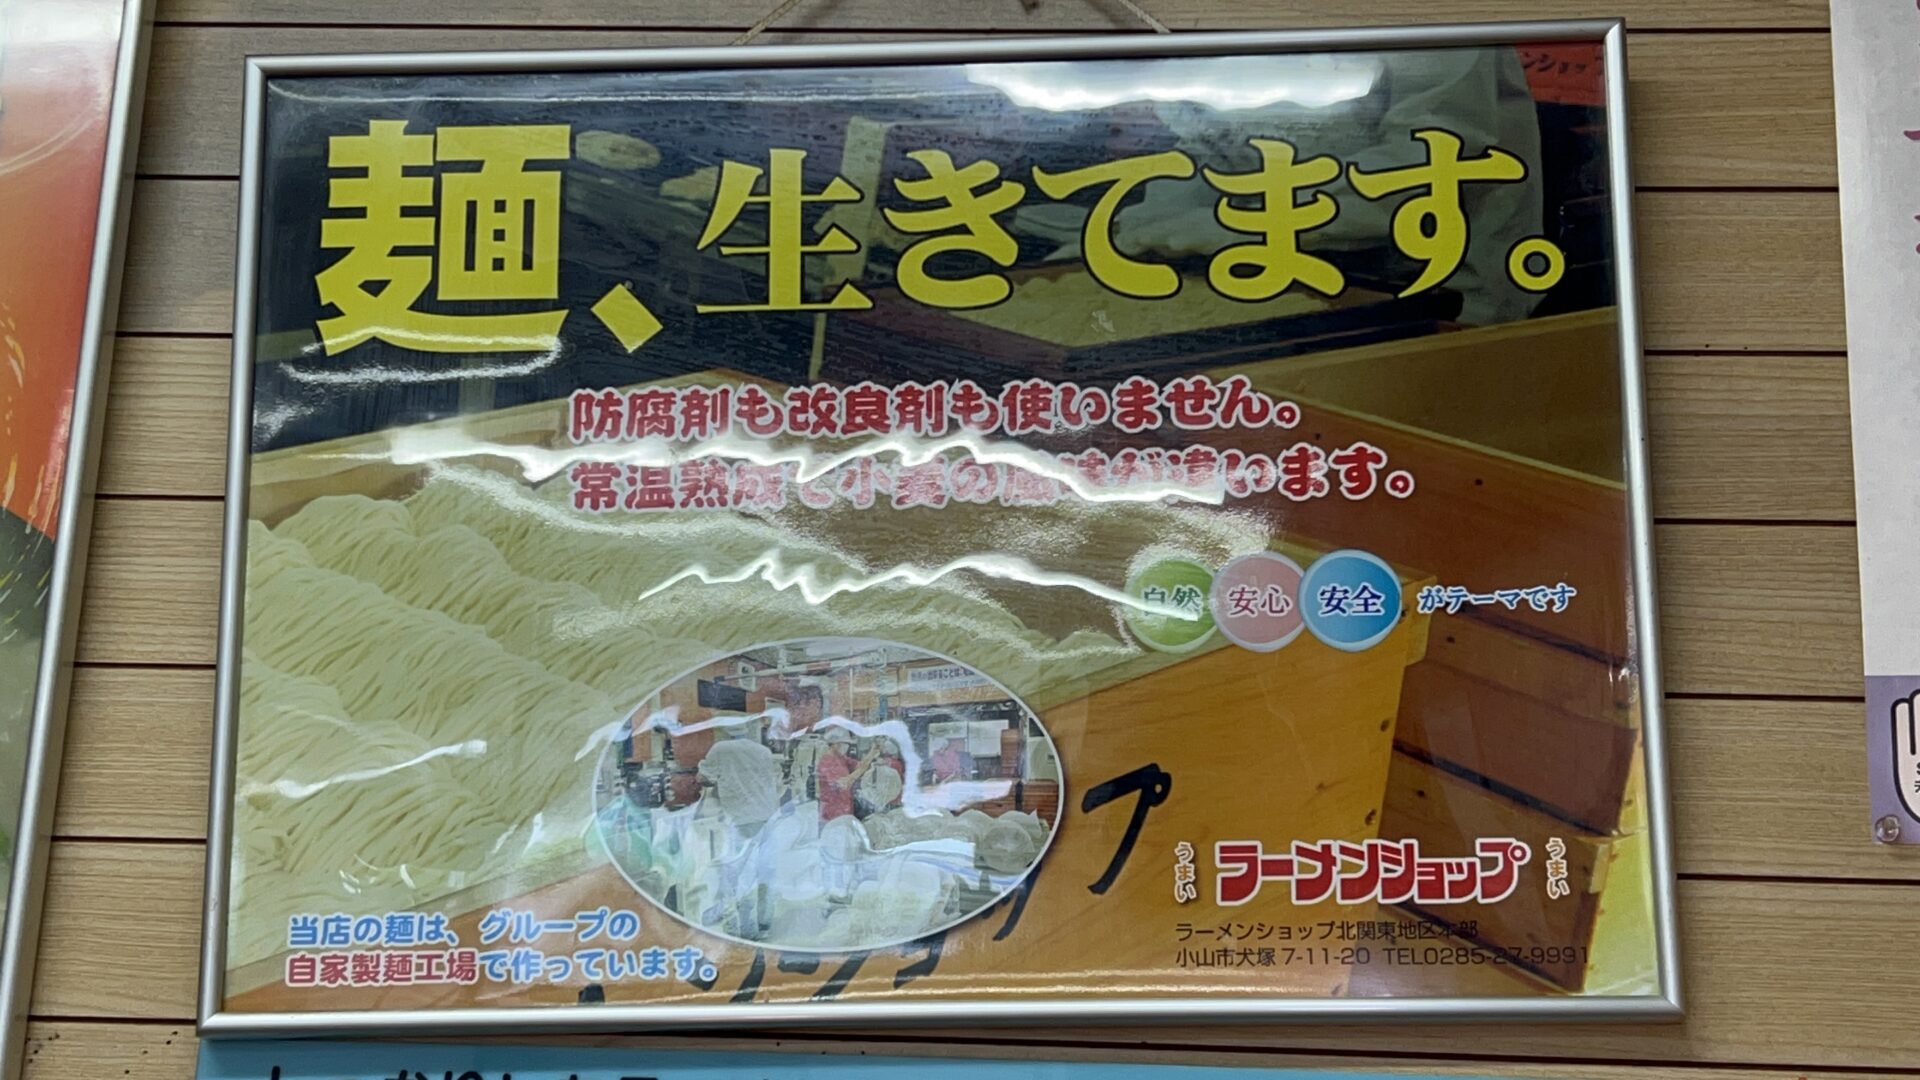 ラーメンショップ鷲宮店ミツワフード北関東白のれん生きている麺